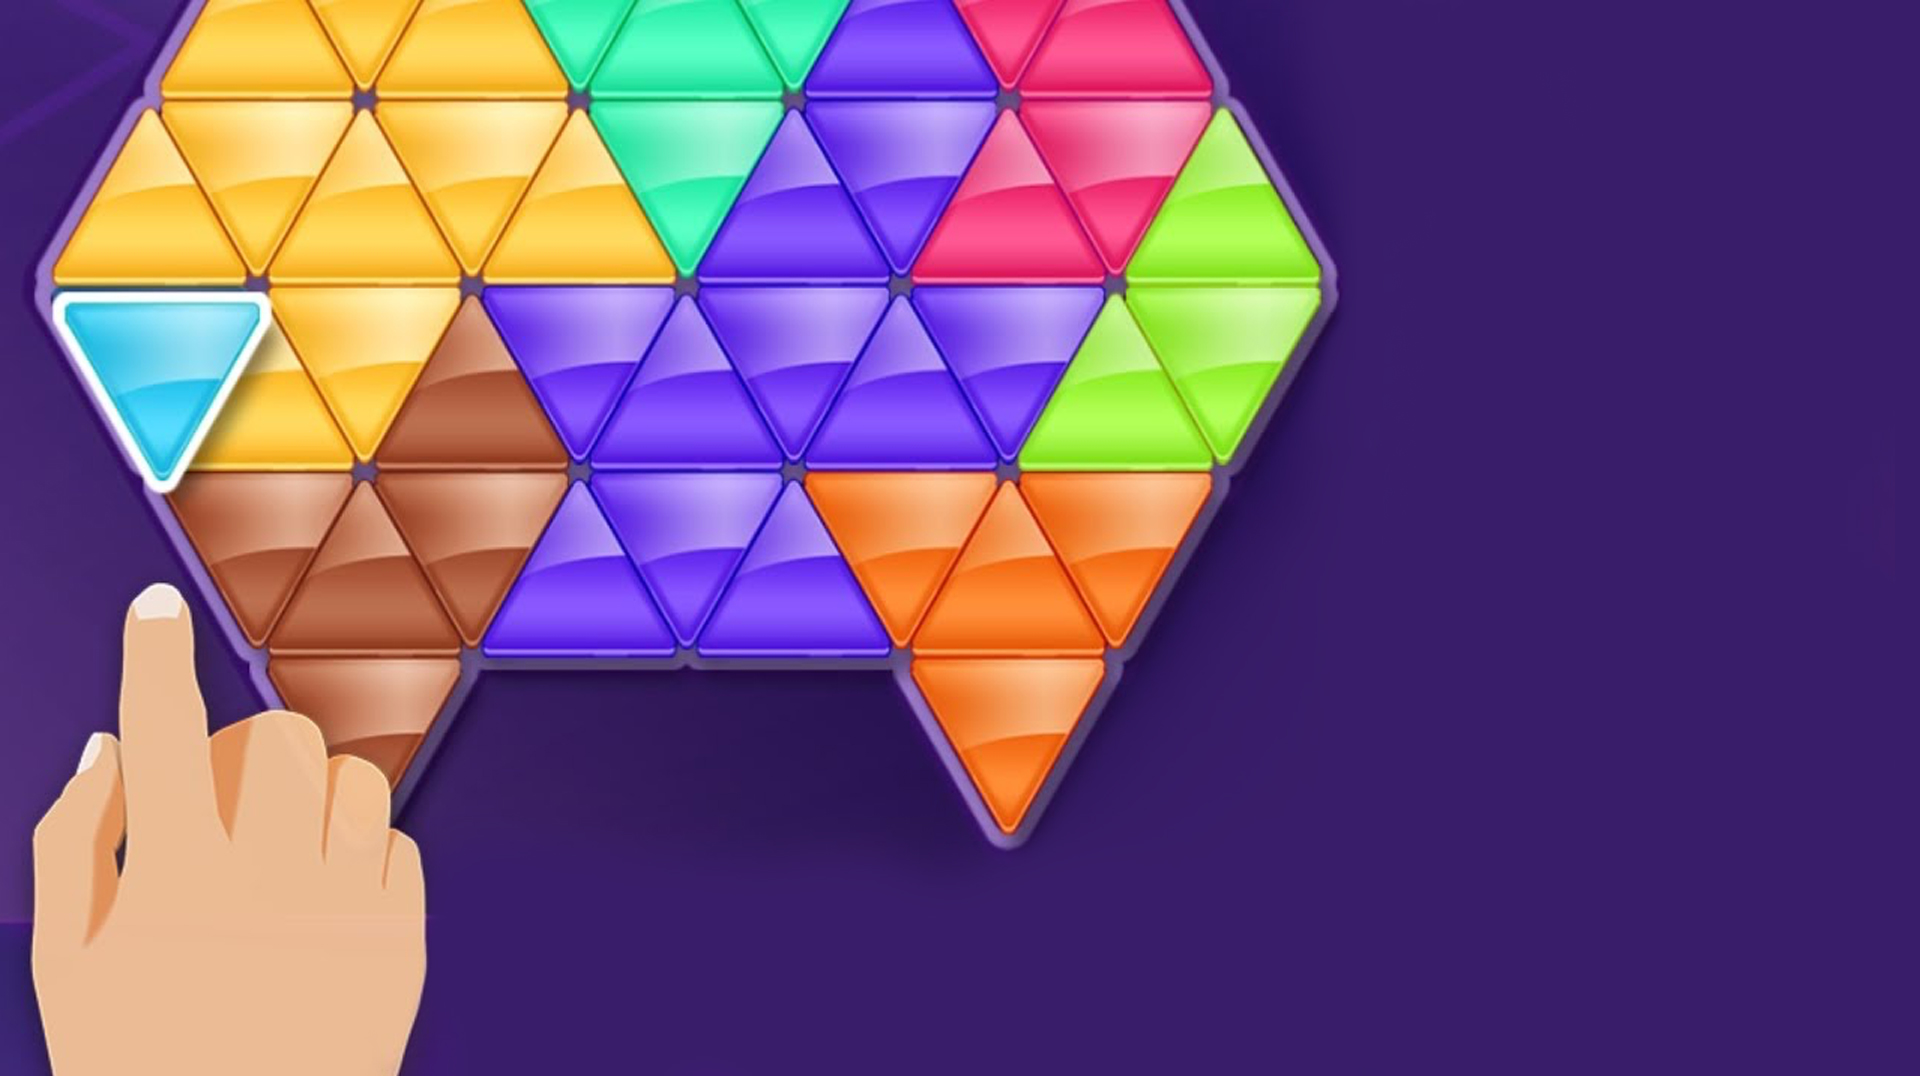 Block! Triangle puzzle: Tangram